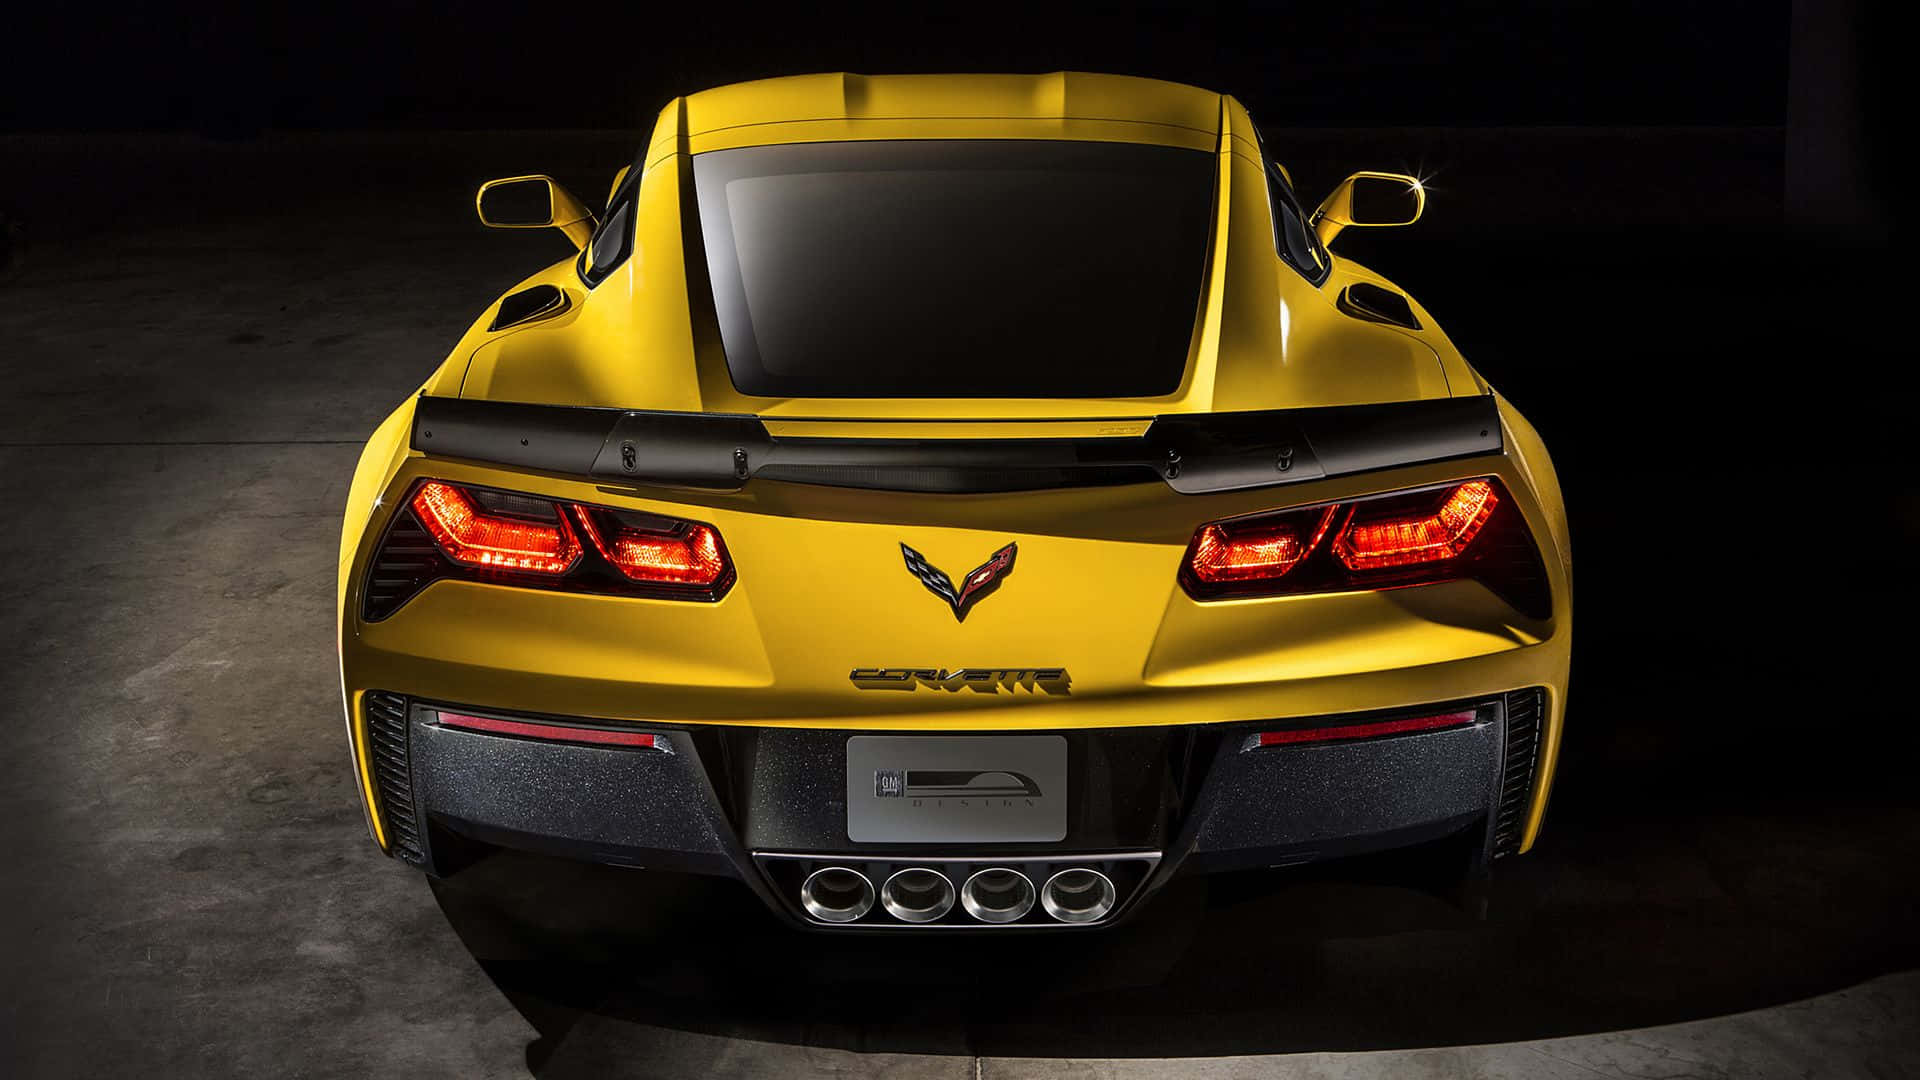 Stunning Chevrolet Corvette Z06 Sports Car Wallpaper